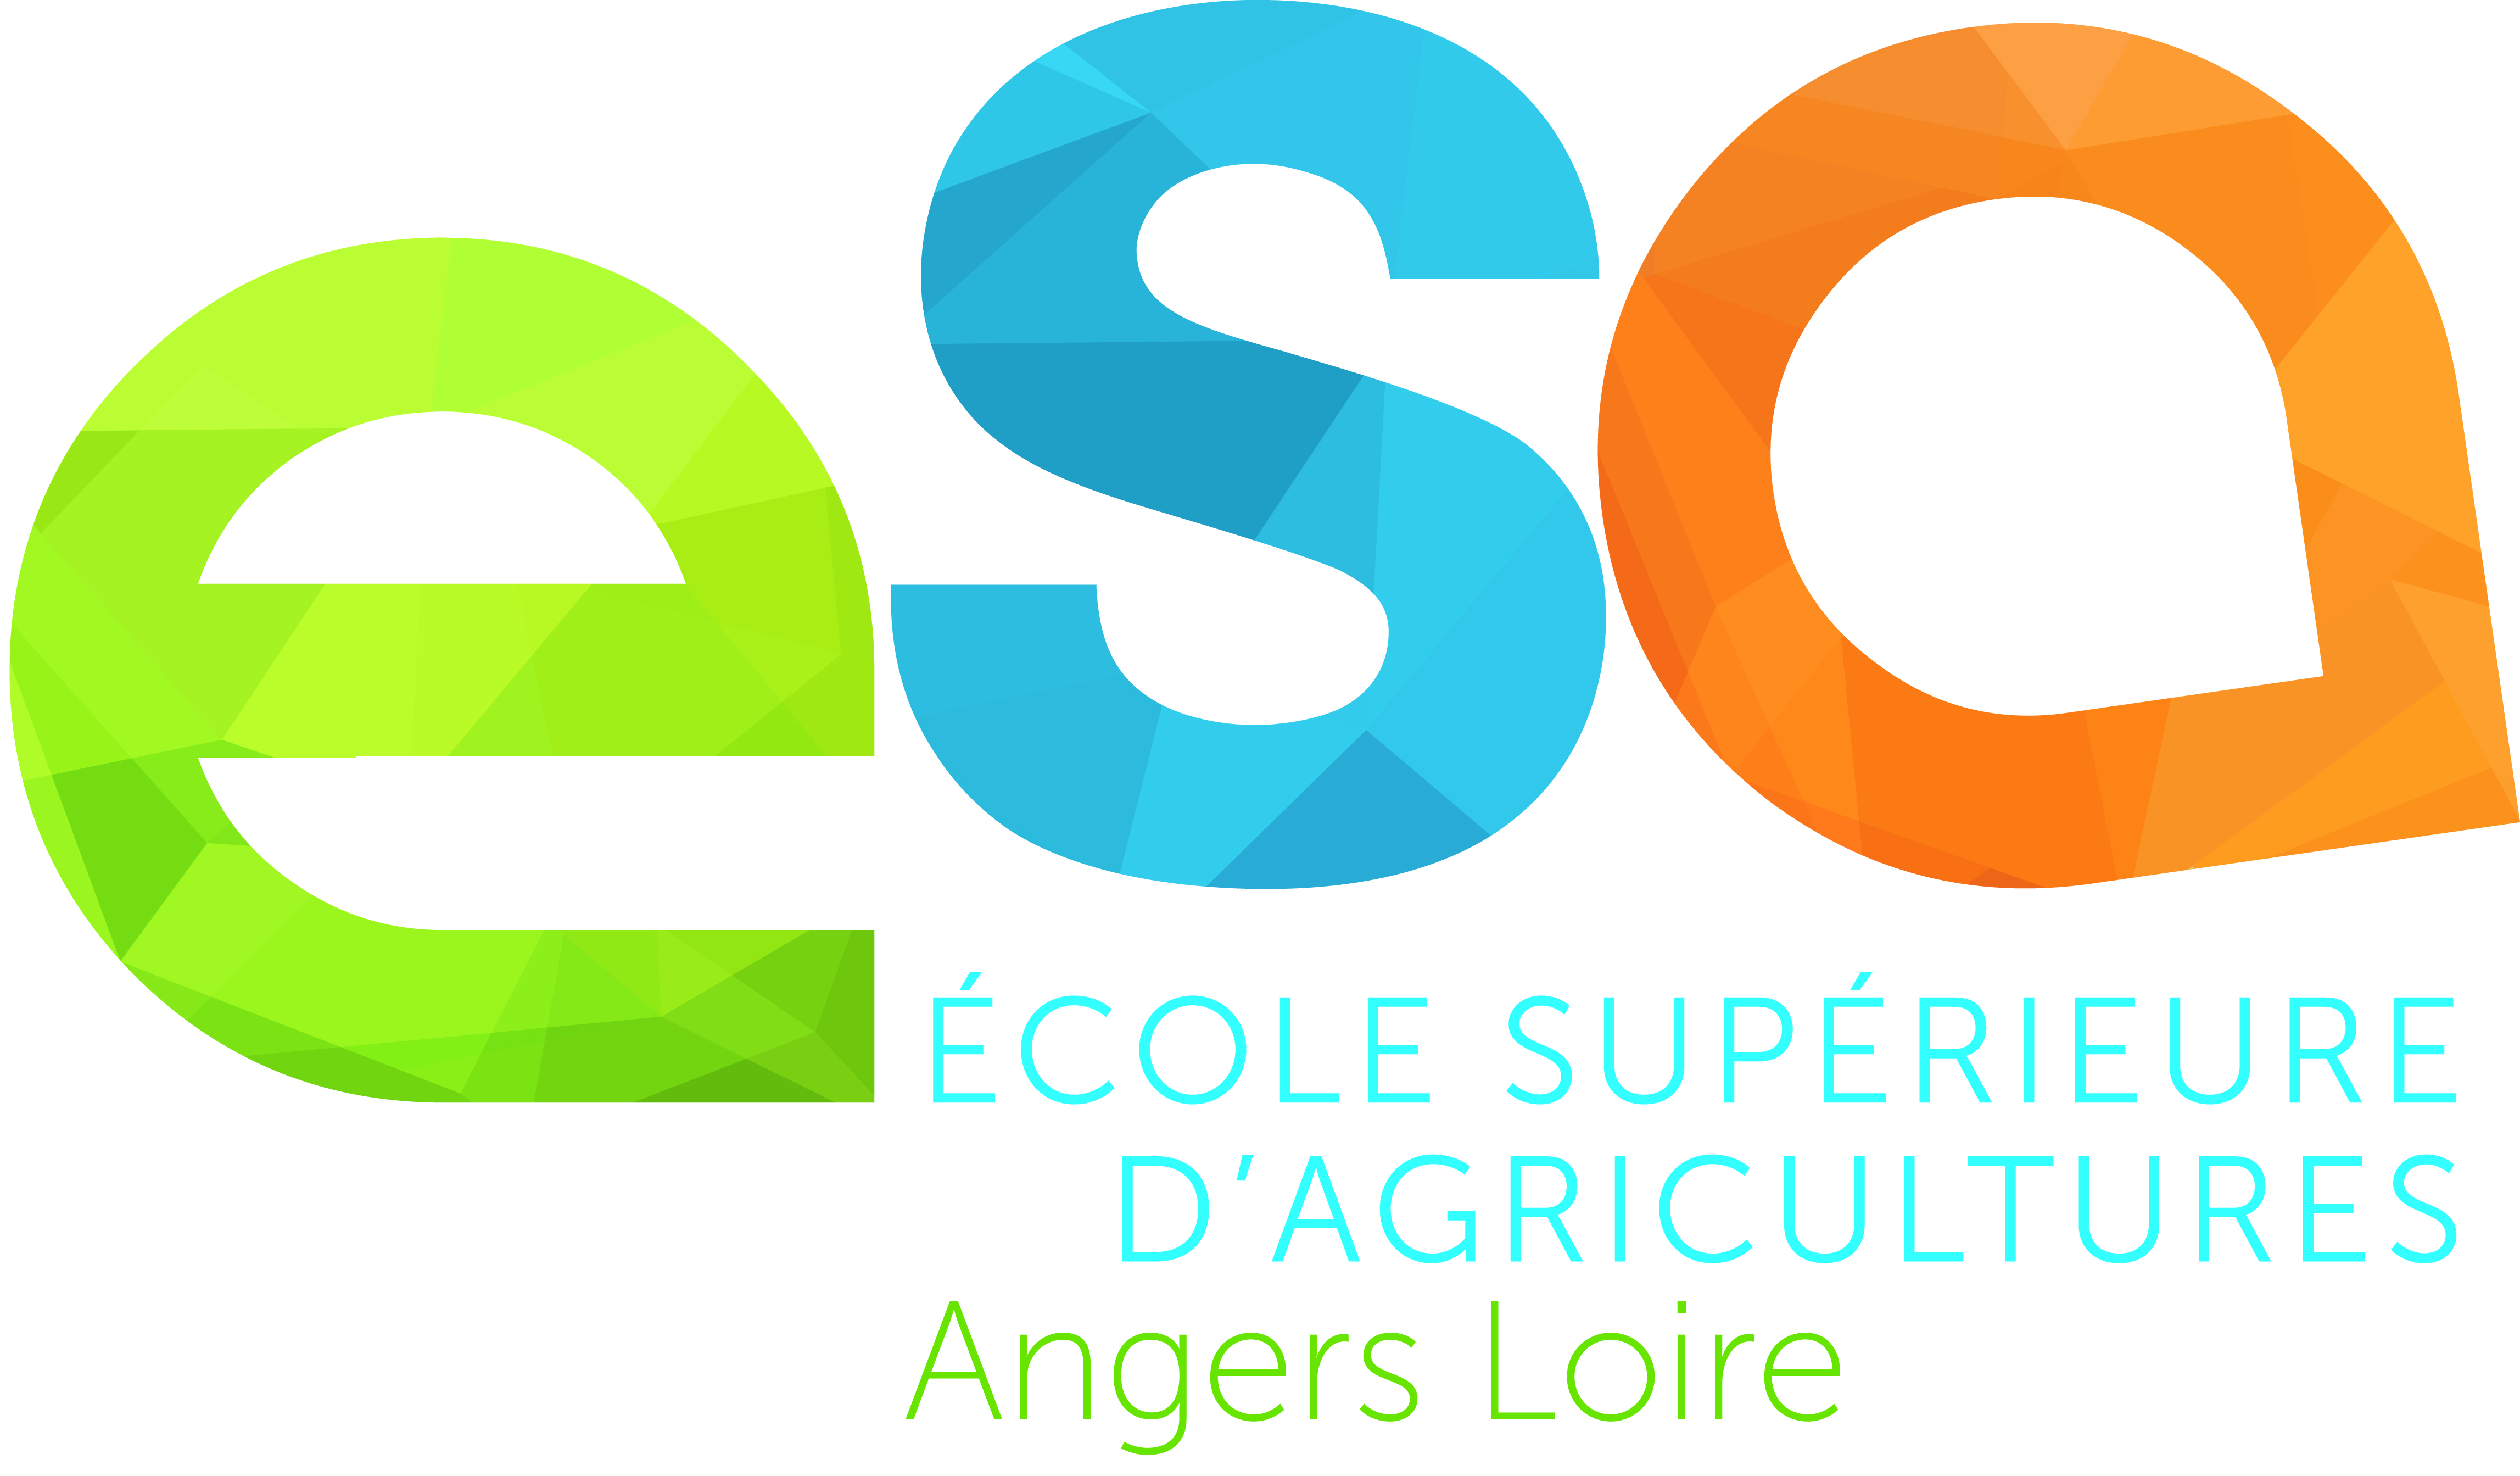 Ecole Supérieure d'Agriculture Angers Loire